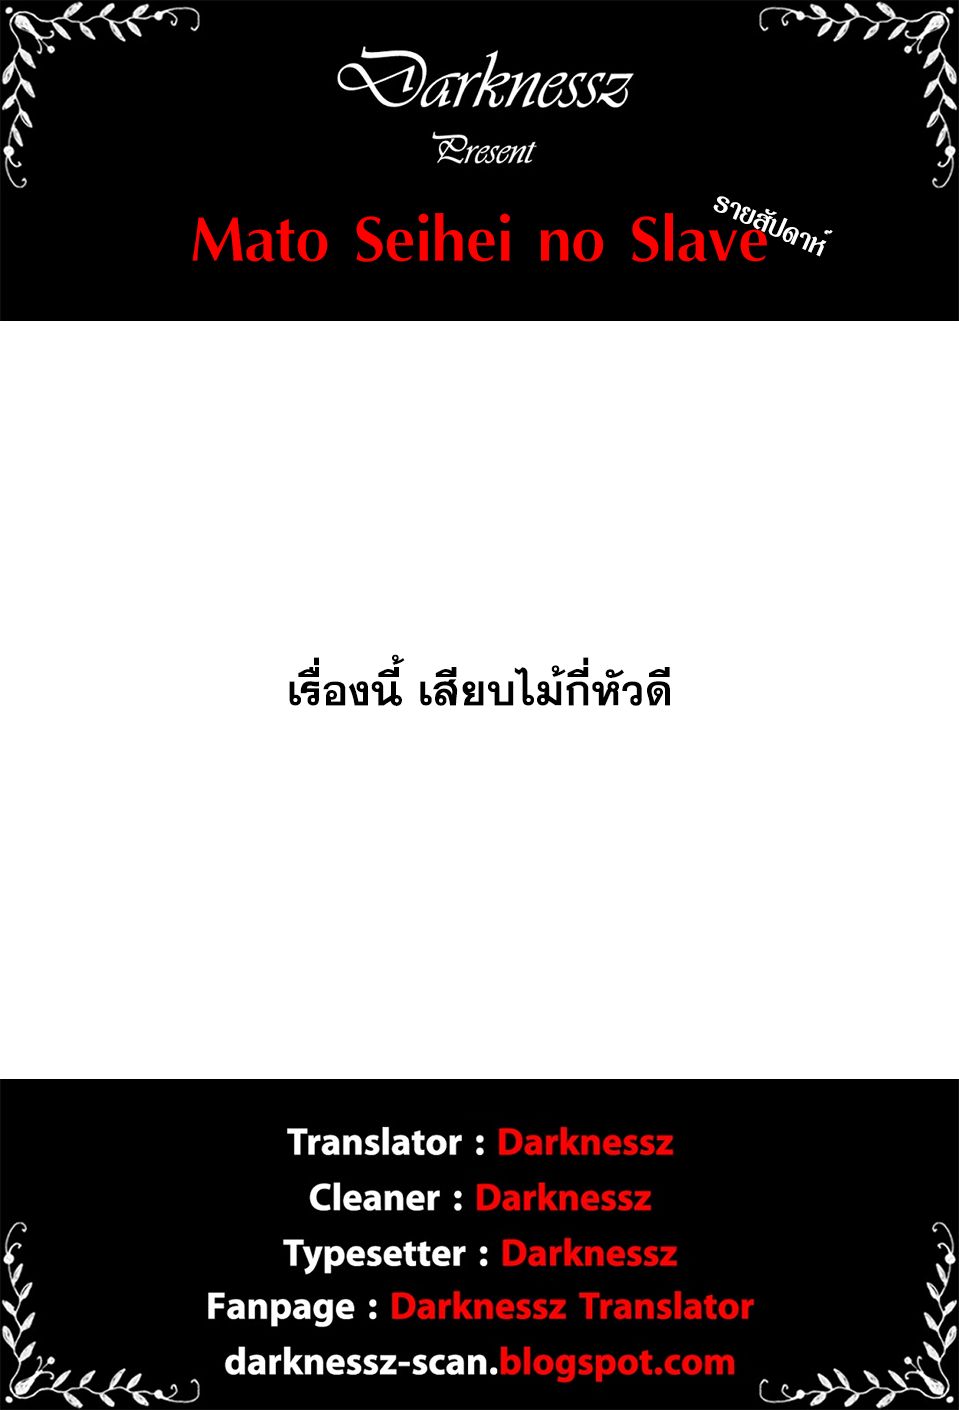 Mato Seihei no Slave à¸ªà¸¸à¸”à¸¢à¸­à¸”à¸—à¸²à¸ªà¹à¸«à¹ˆà¸‡à¸«à¸™à¹ˆà¸§à¸¢à¸žà¸´à¸†à¸²à¸•à¸¡à¸²à¸£ à¸•à¸­à¸™à¸—à¸µà¹ˆ 1 (60)